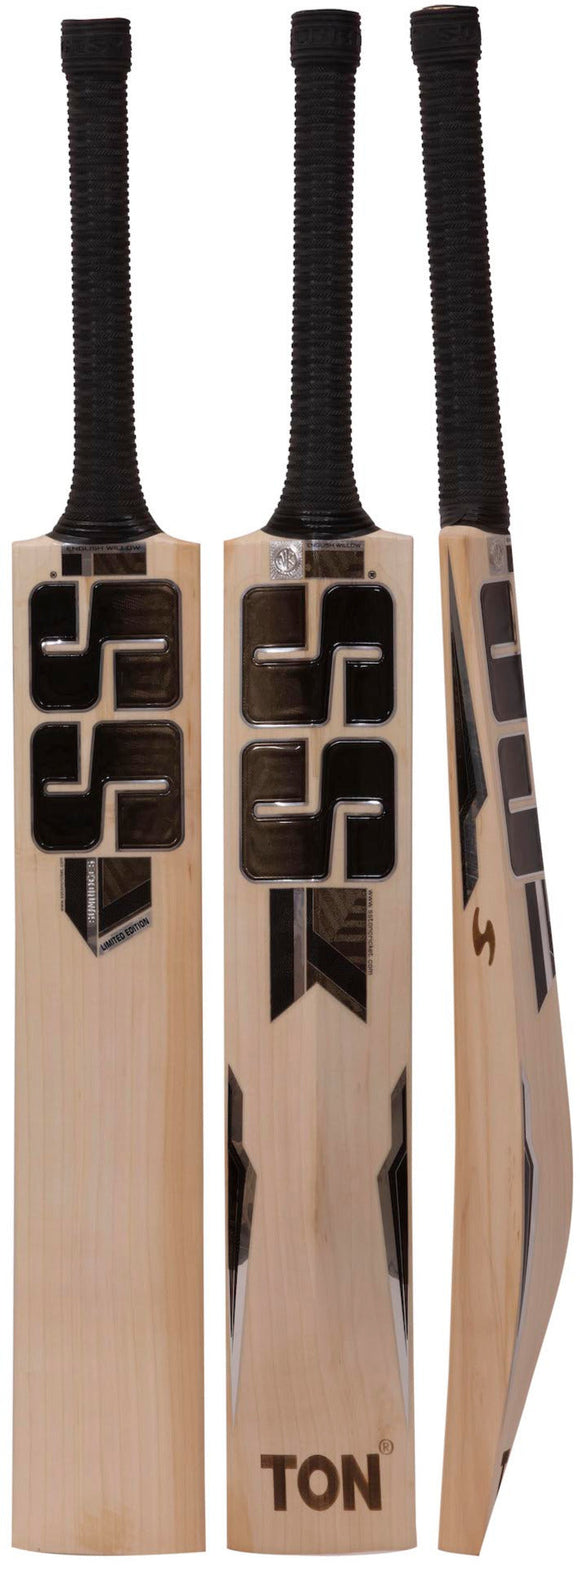 SS Limited Edition Junior Cricket Bat - Harrow